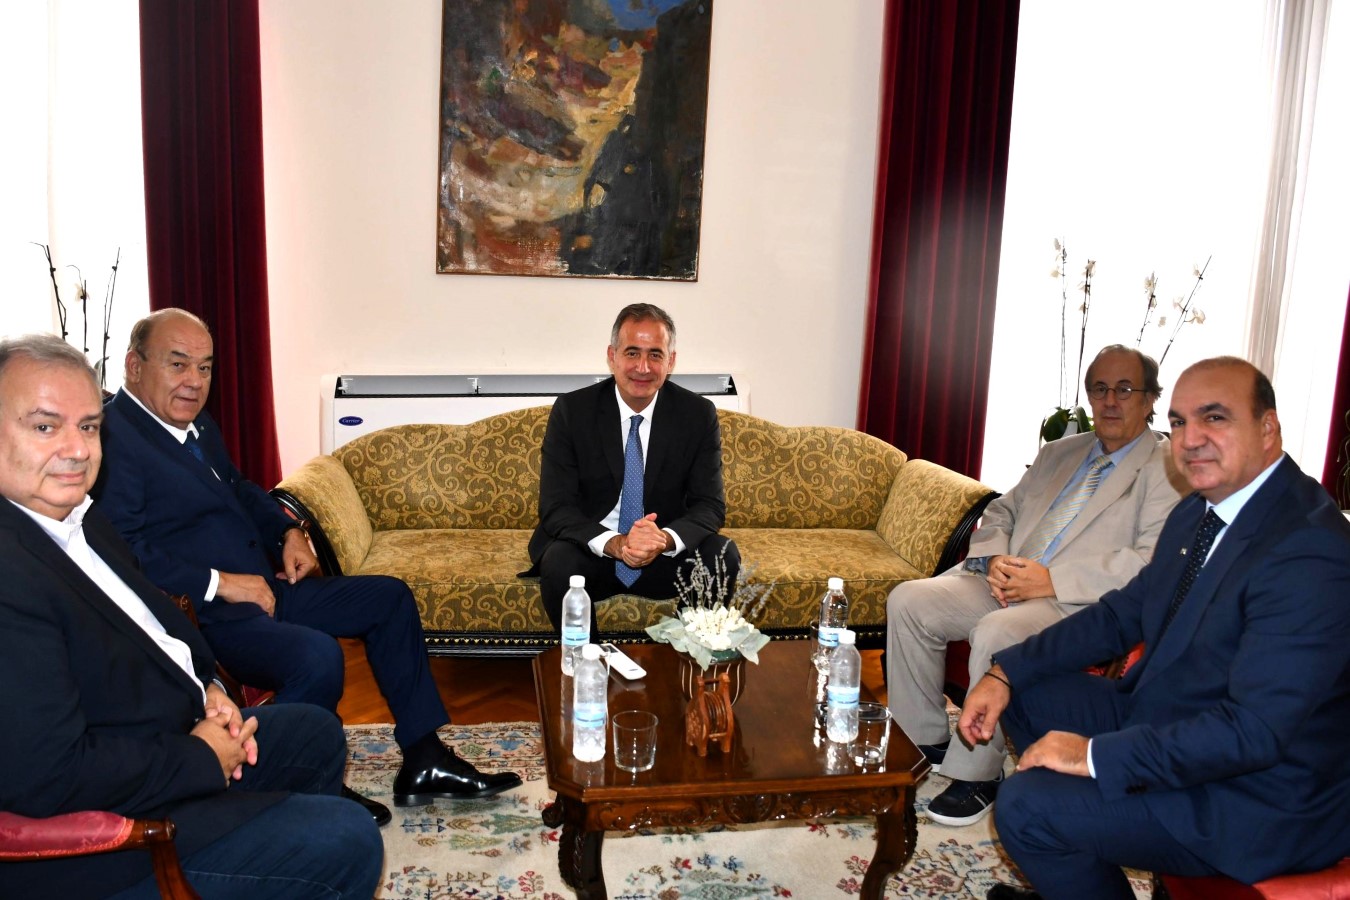 Εικόνα άρθρου Συνάντηση του Υφυπουργού Μακεδονίας και Θράκης, κ. Στάθη Κωνσταντινίδη με τον Πρόεδρο του ΕΒΕΘ και της ΚΕΕΕ κ. Γιάννη Μασούτη (custom)